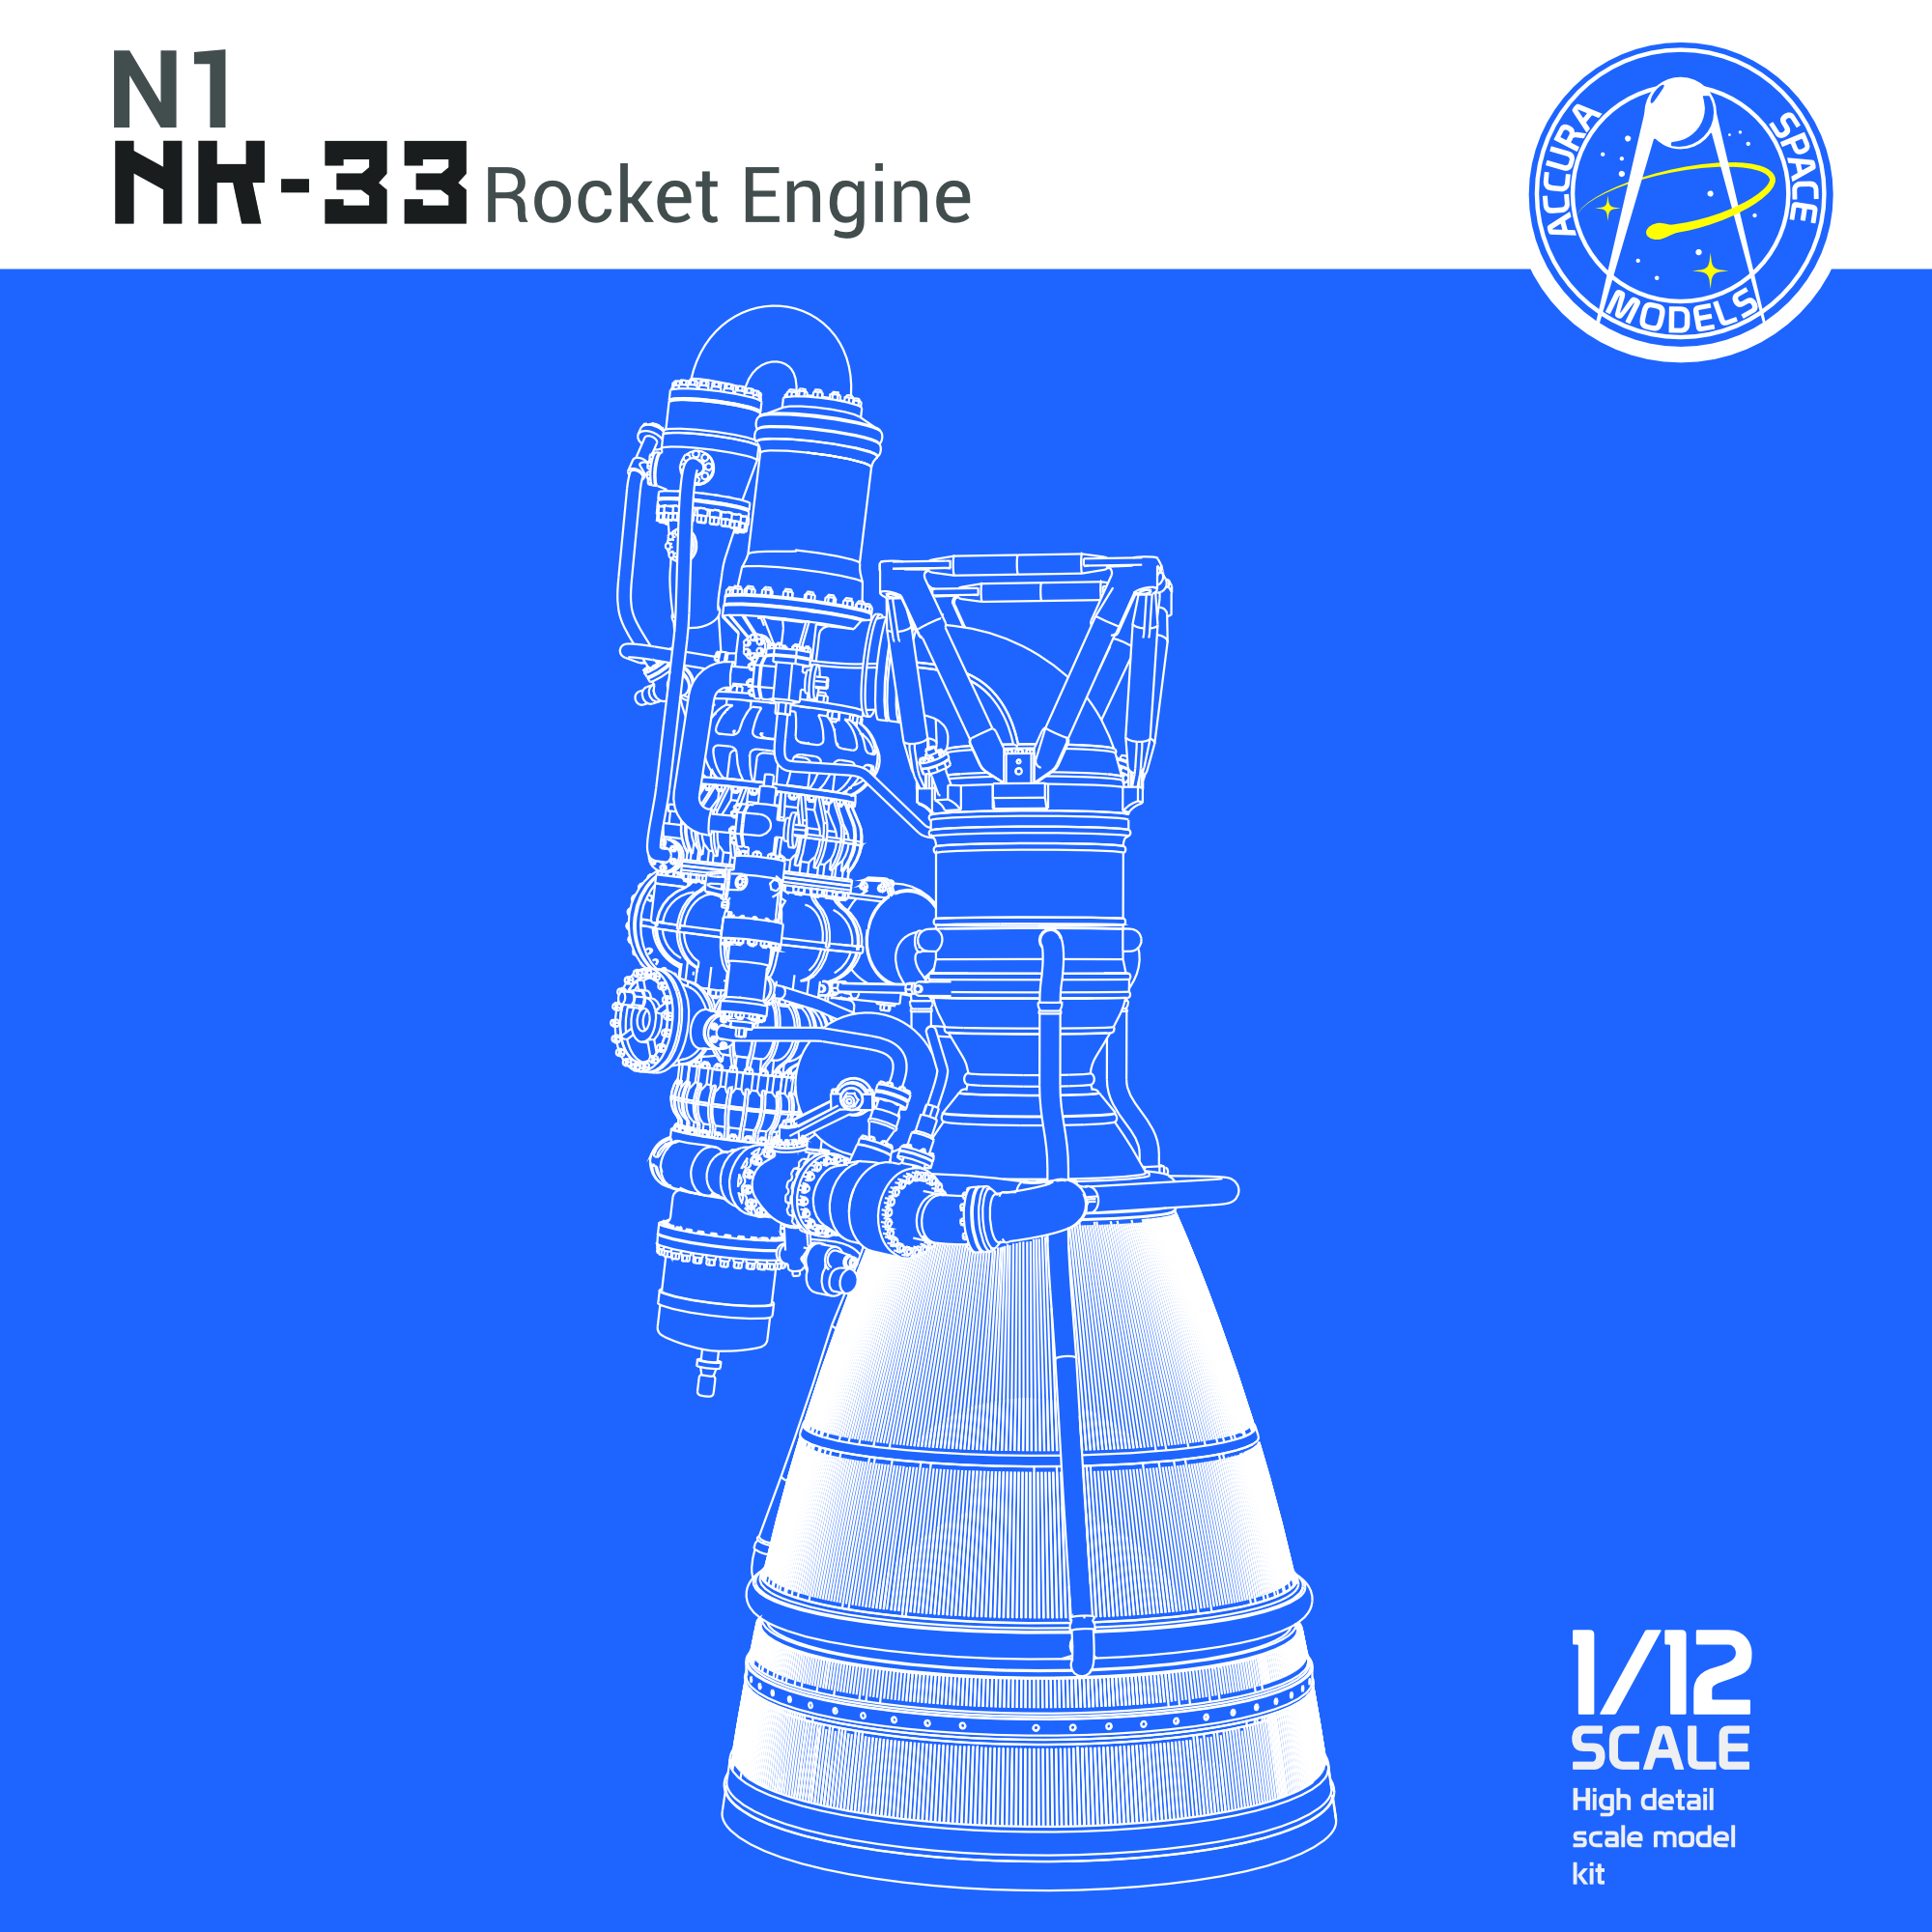 Rocket engine SpaceX Merlin 1C model KIT 1:12 